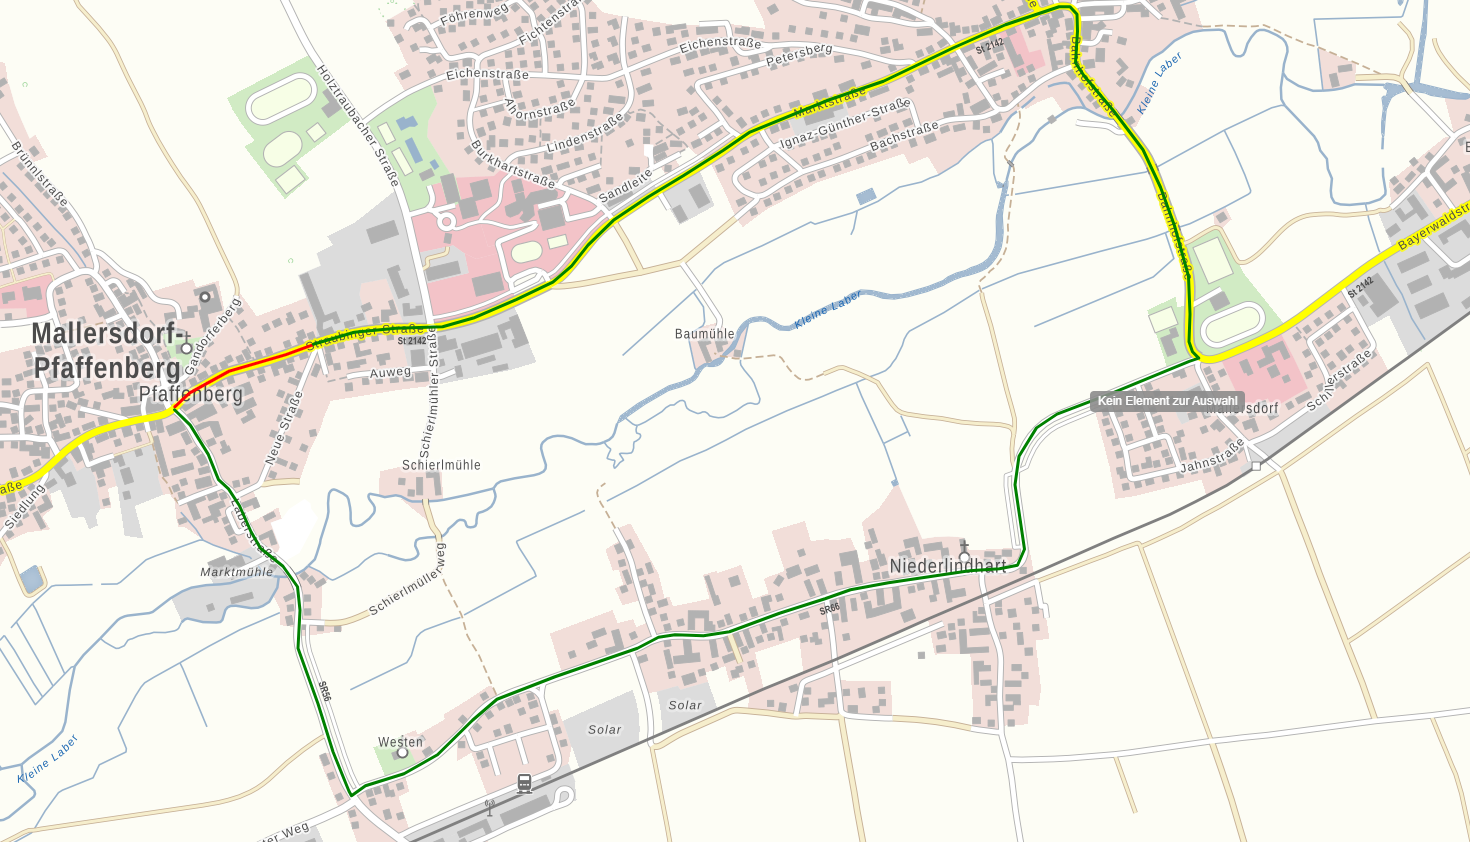 Verlängerung der Sperre in Mallersdorf-Pfaffenberg bis 16. Dezember